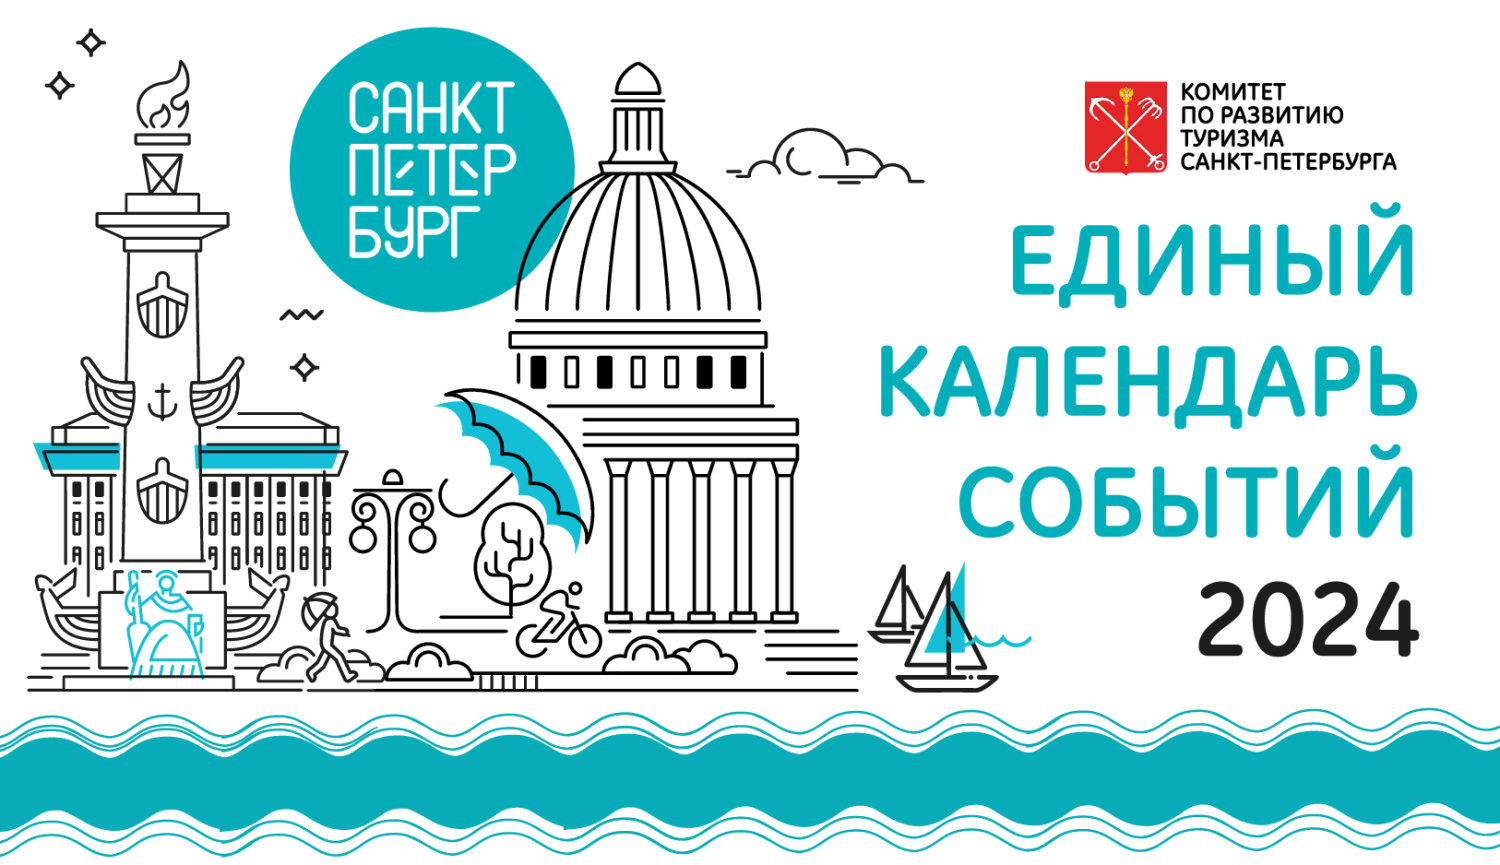 Комитет по развитию туризма формирует Единый календарь событий Санкт-Петербурга на 2024 год